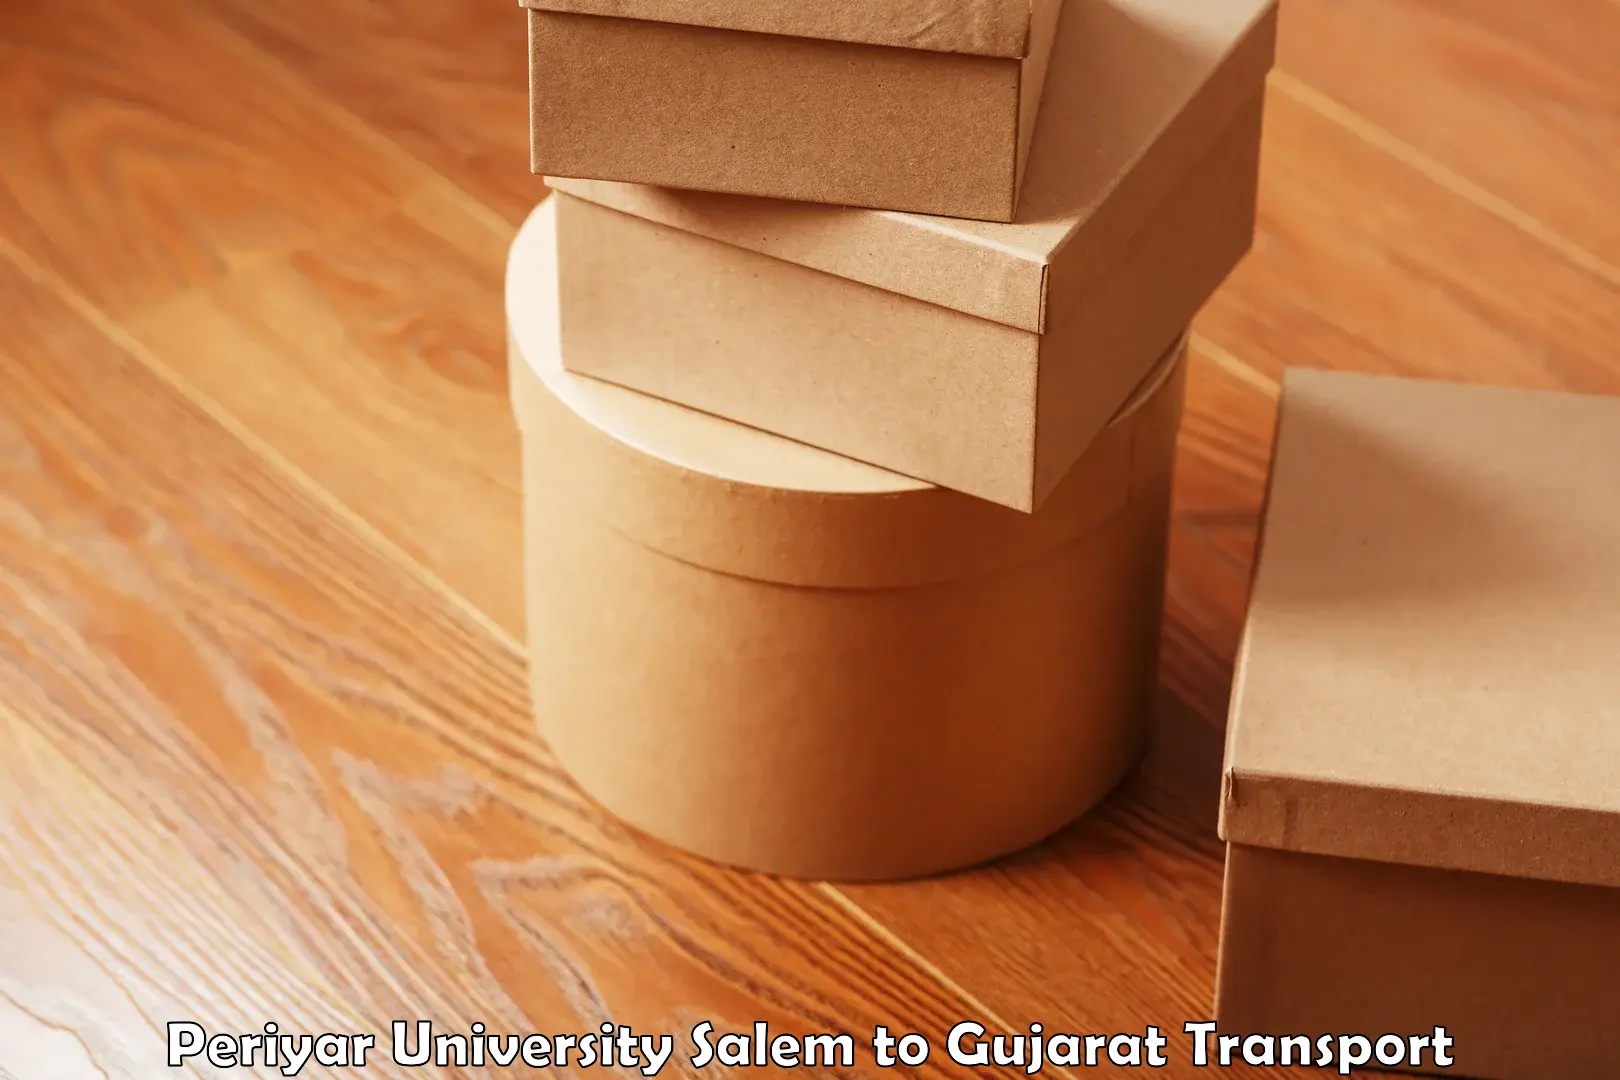 Nearest transport service Periyar University Salem to Gujarat